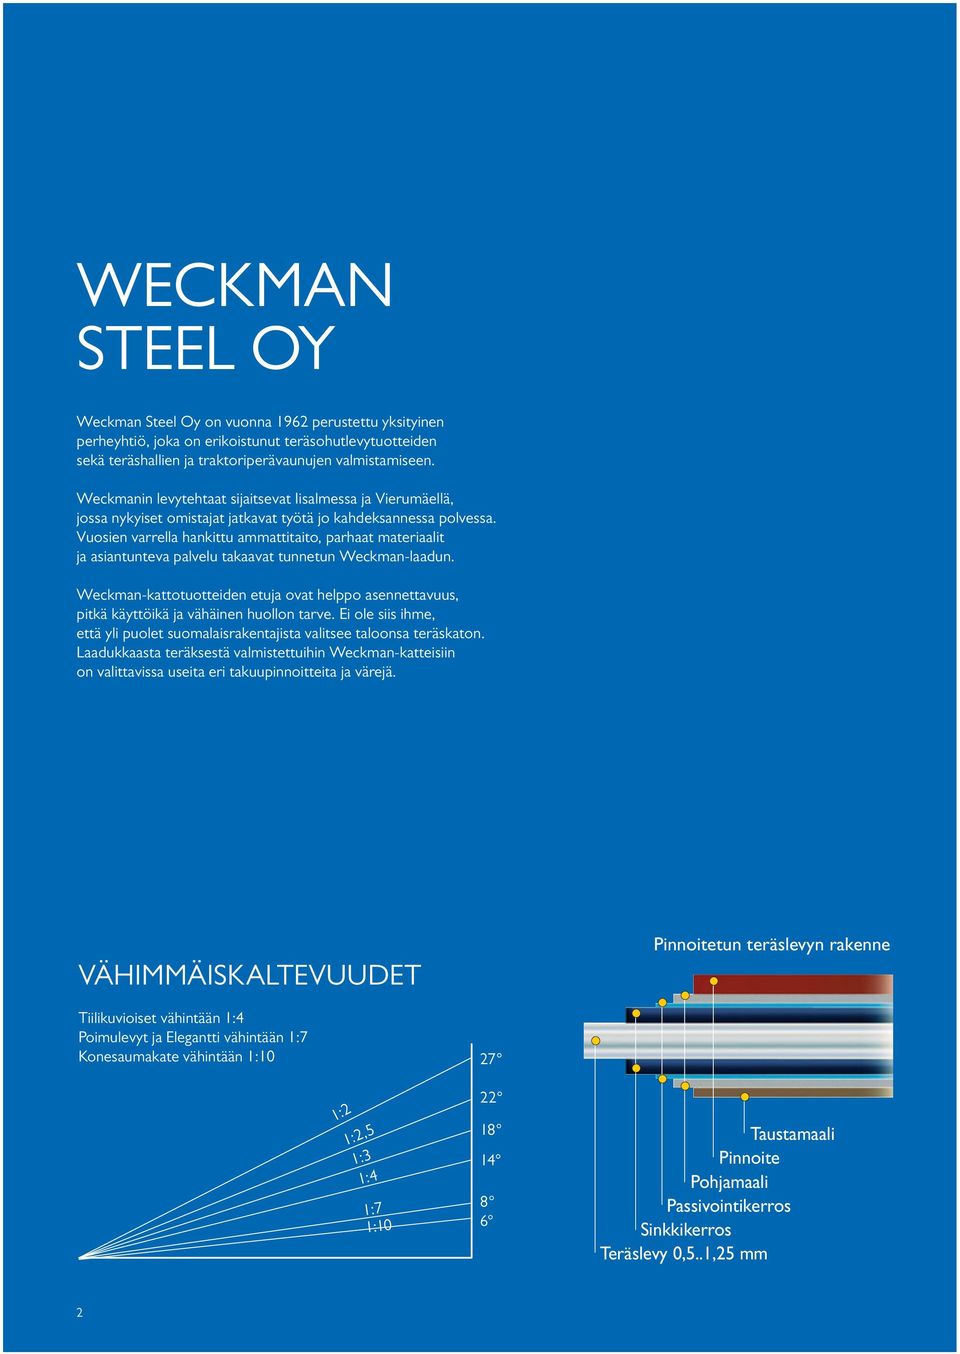 Vuosien varrella hankittu ammattitaito, parhaat materiaalit ja asiantunteva palvelu takaavat tunnetun Weckman-laadun.